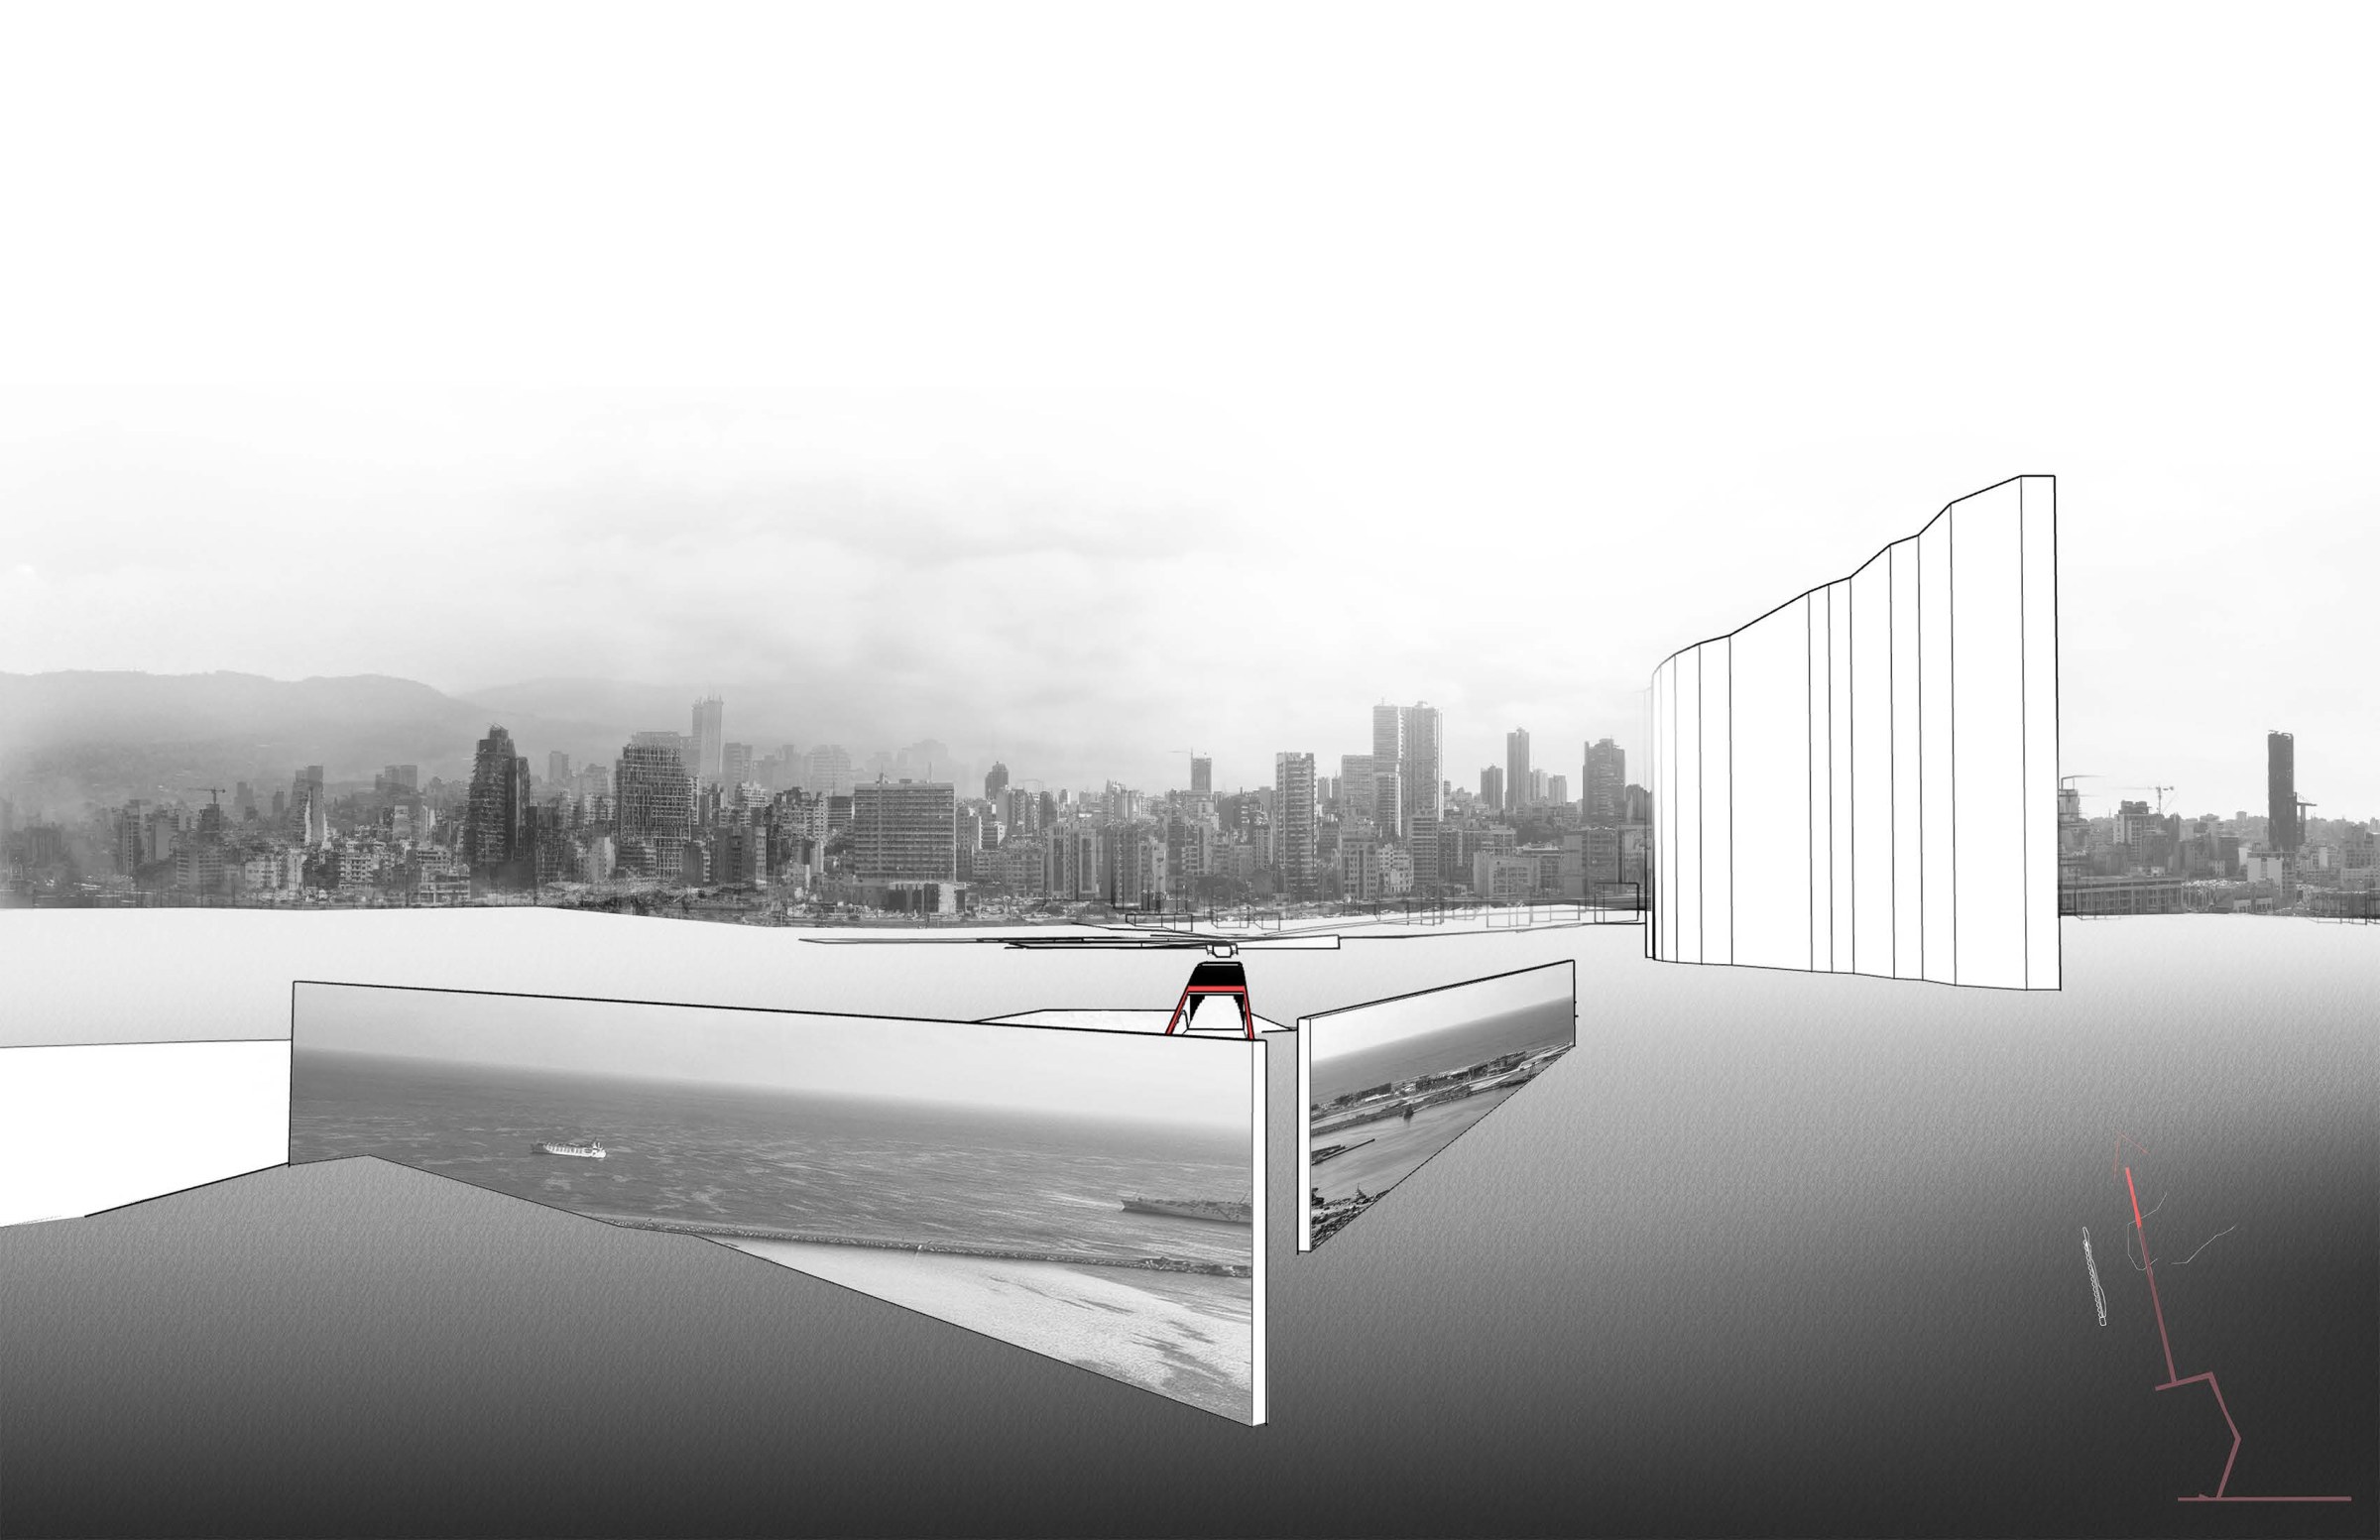 Lauren Mcgrath's thesis project render of waterline and skyline